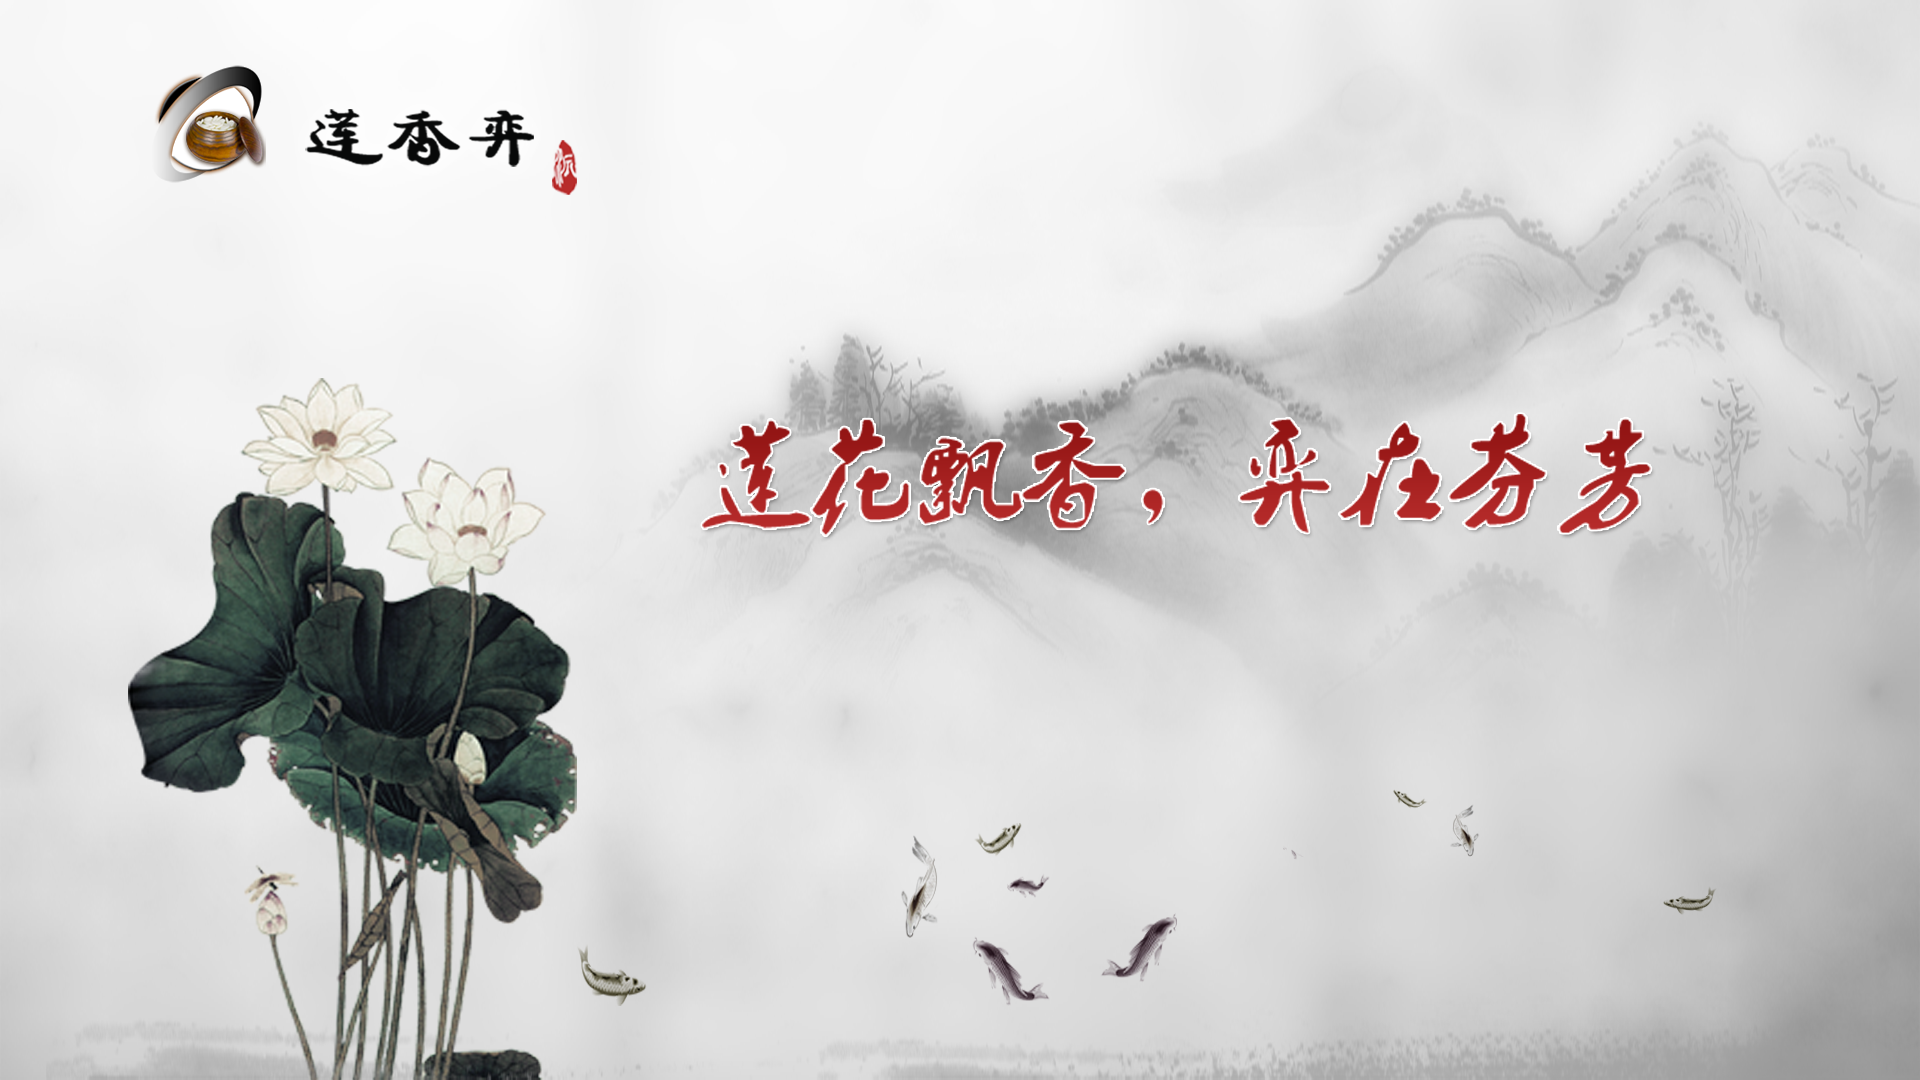 Banner of Lian Xiang spielt Go 8.20.26